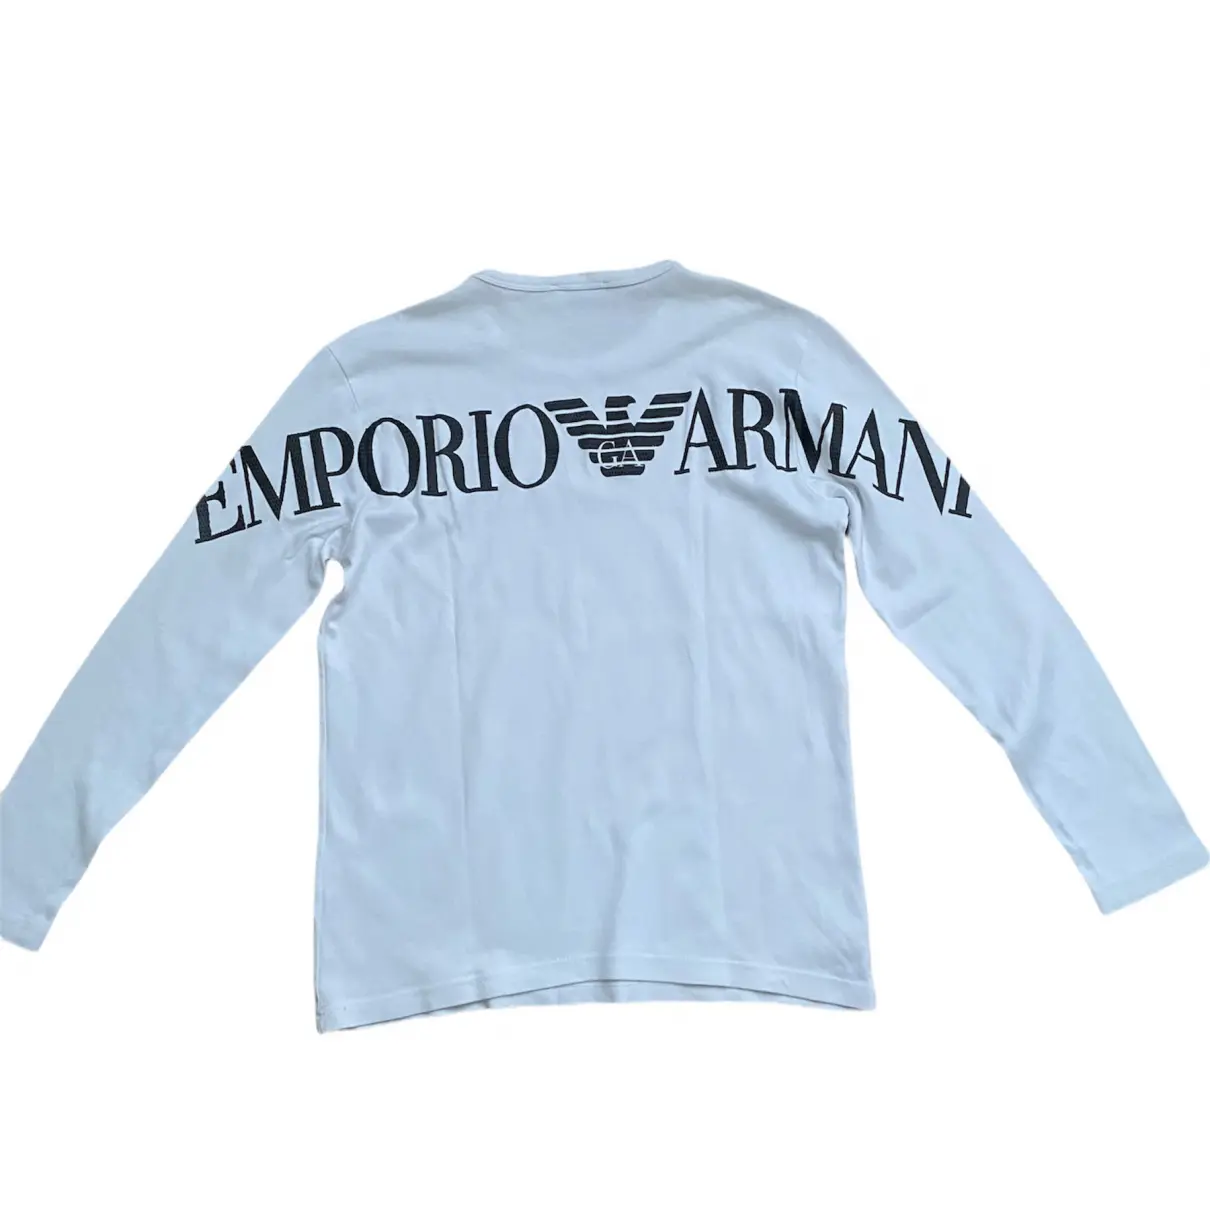 Buy Emporio Armani Shirt online